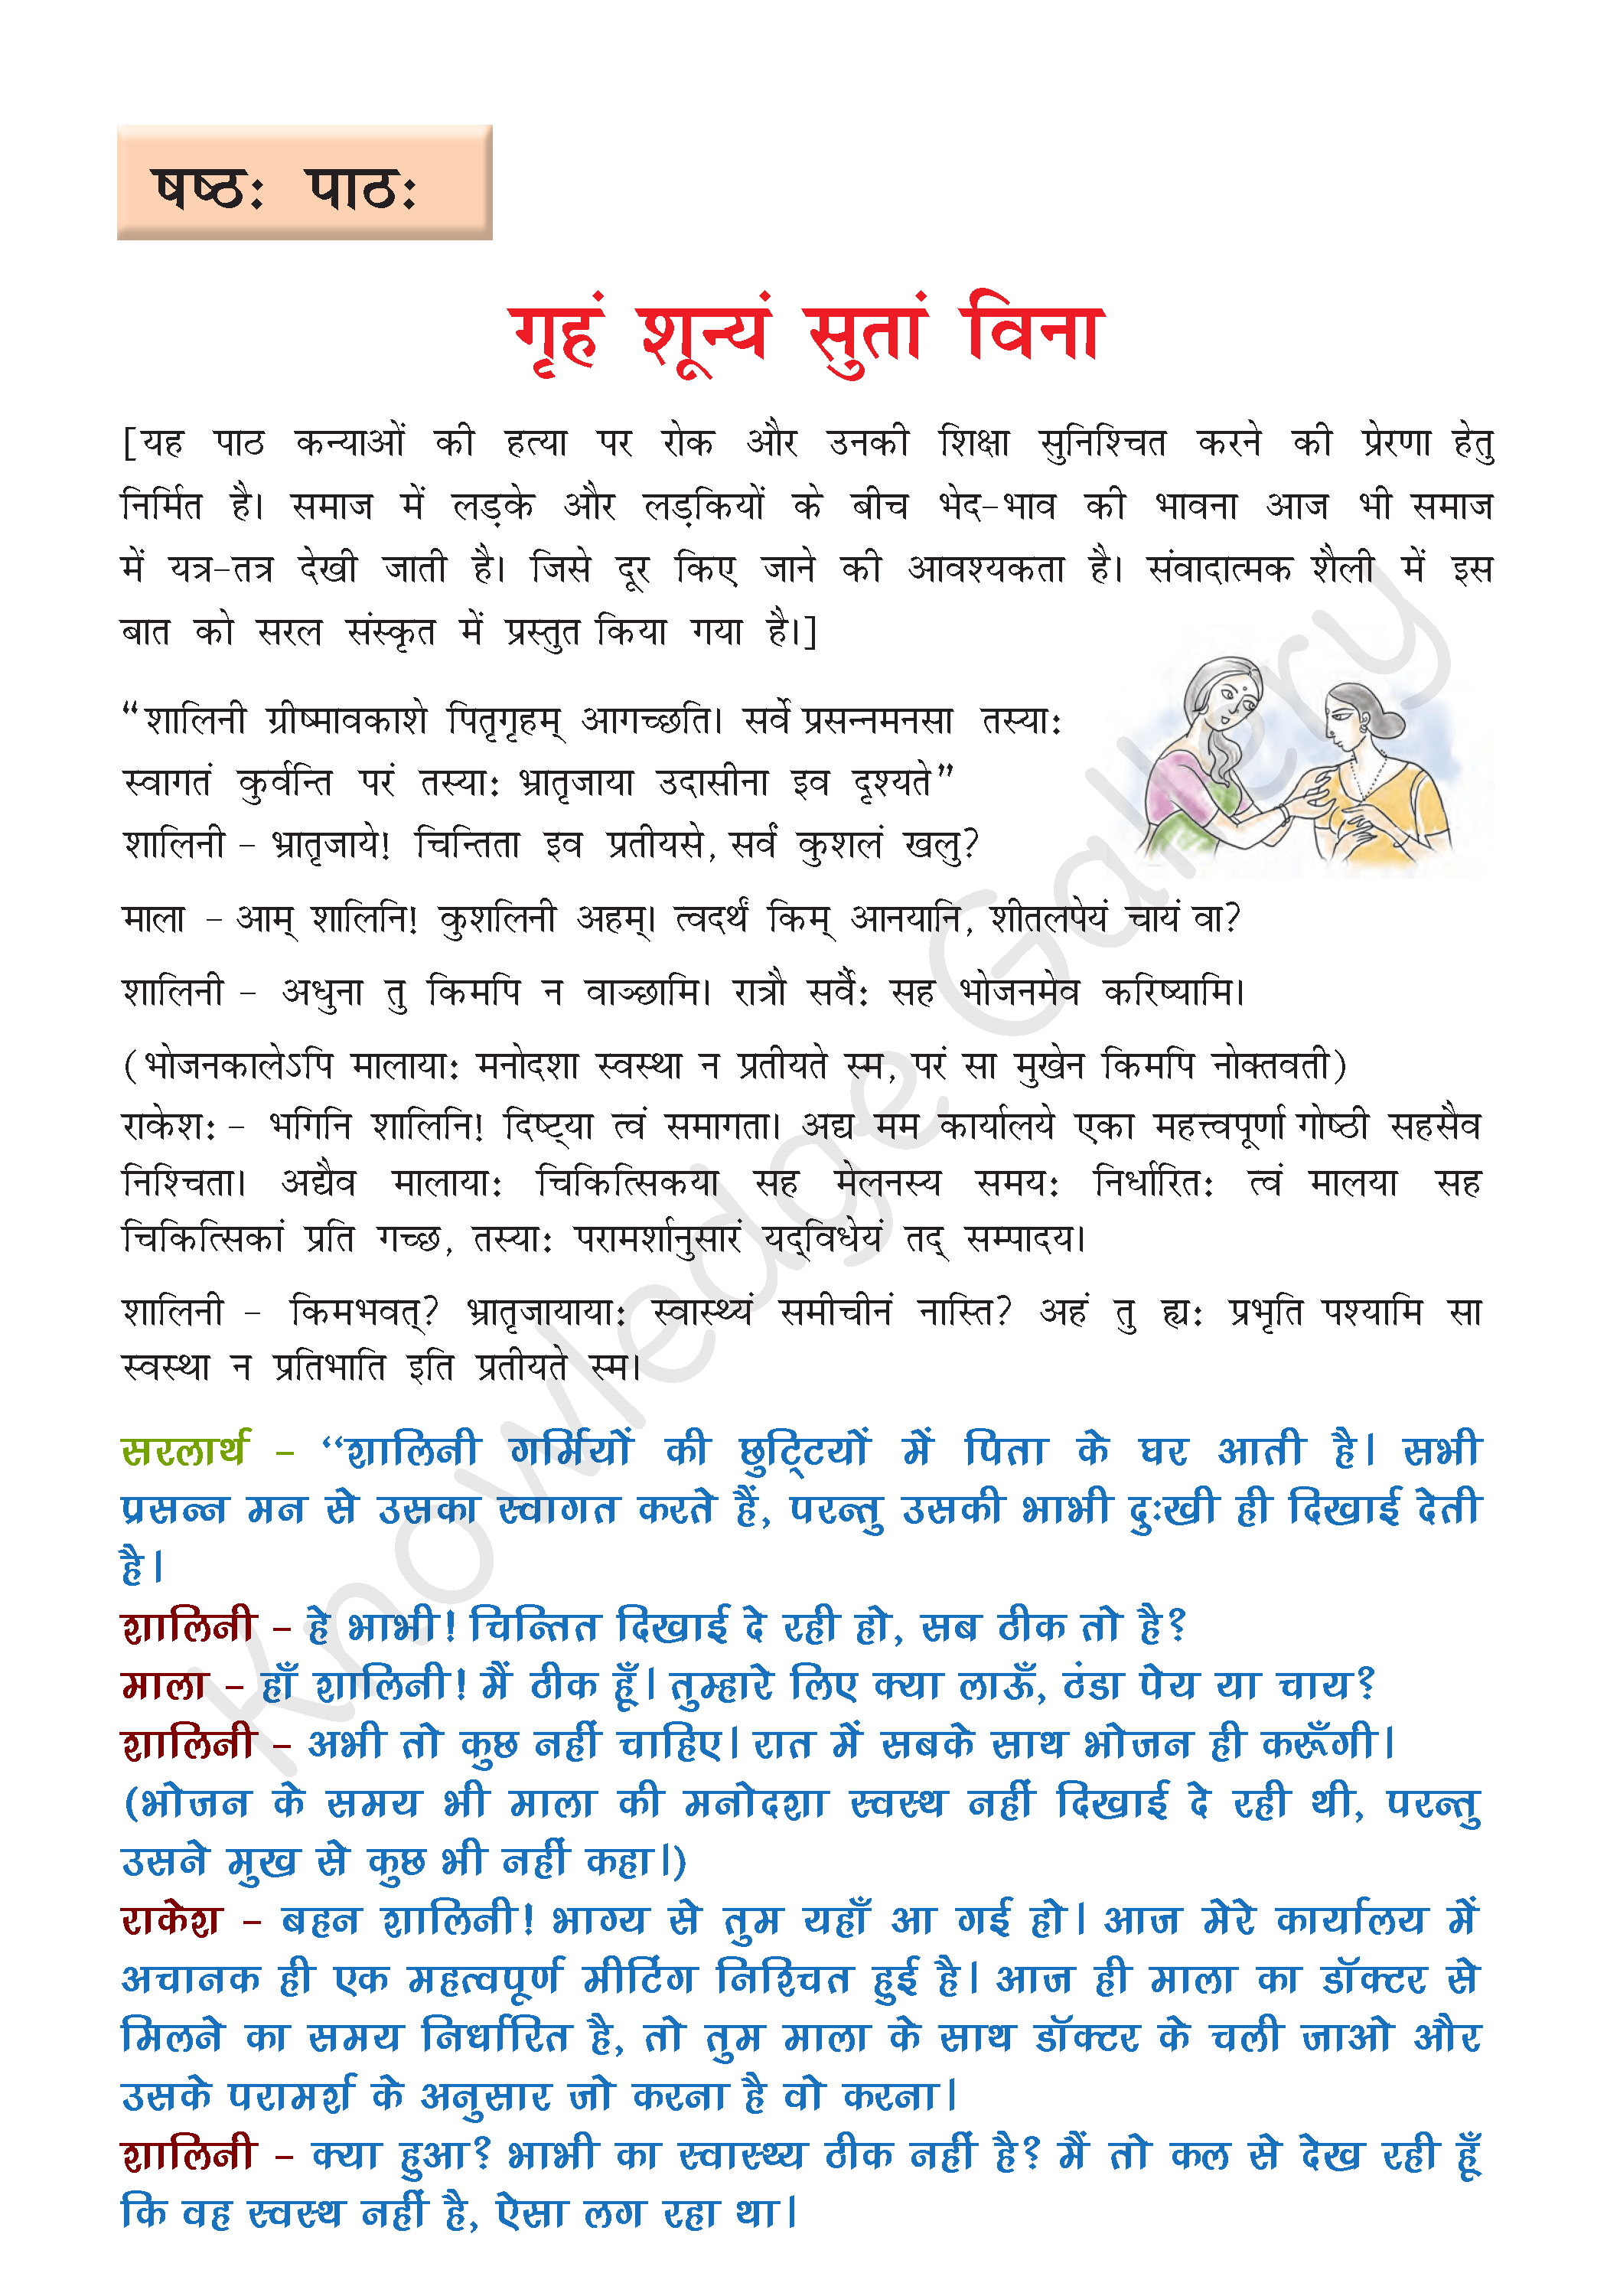 NCERT Solution For Class 8 Sanskrit Chapter 6 part 1